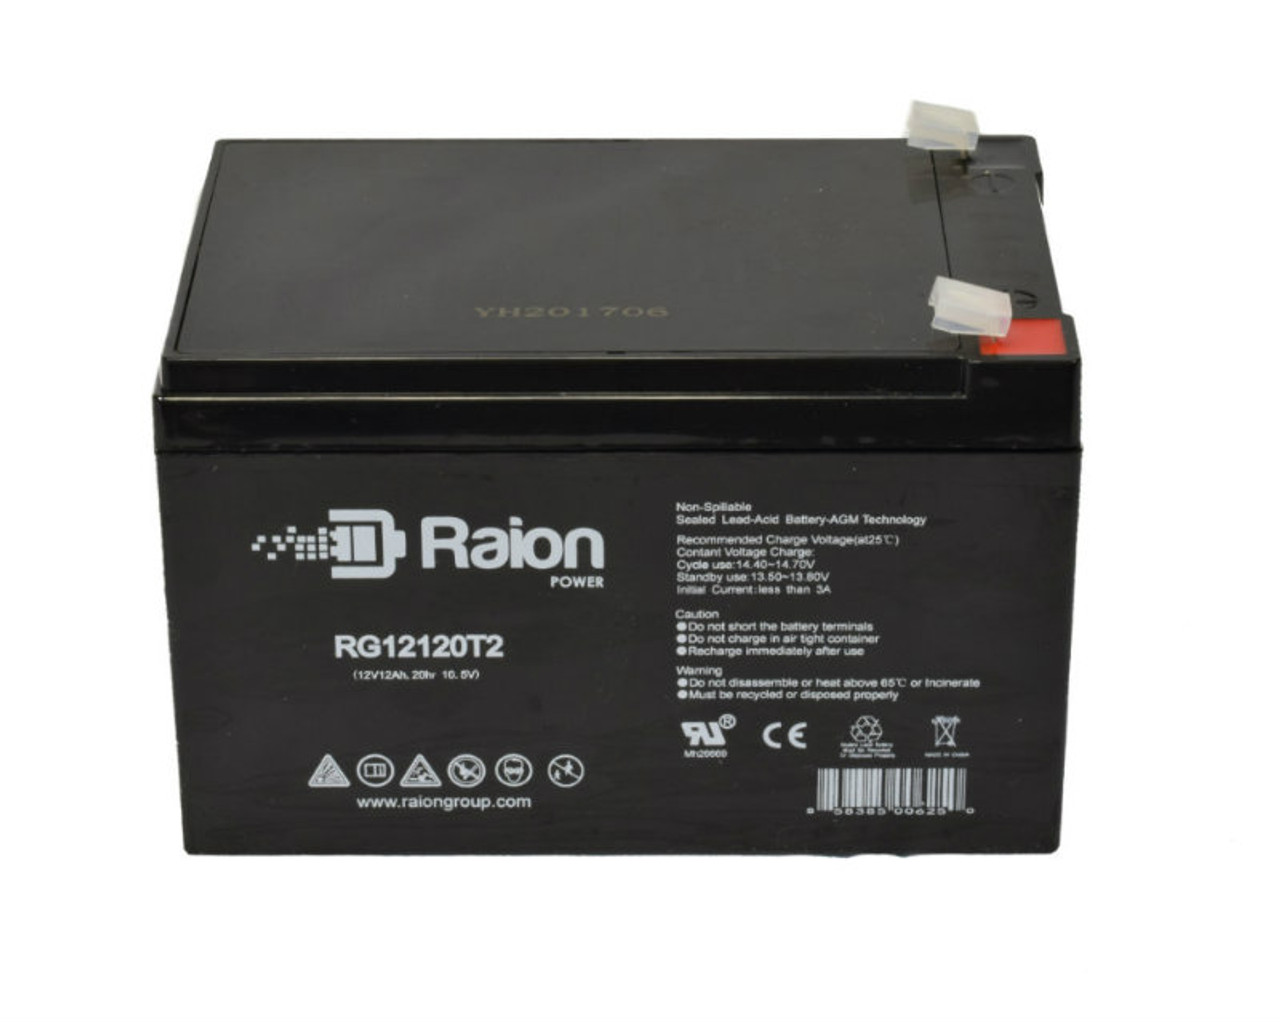 Raion Power RG12120T2 SLA Battery for Altronix AL642UL2ADA